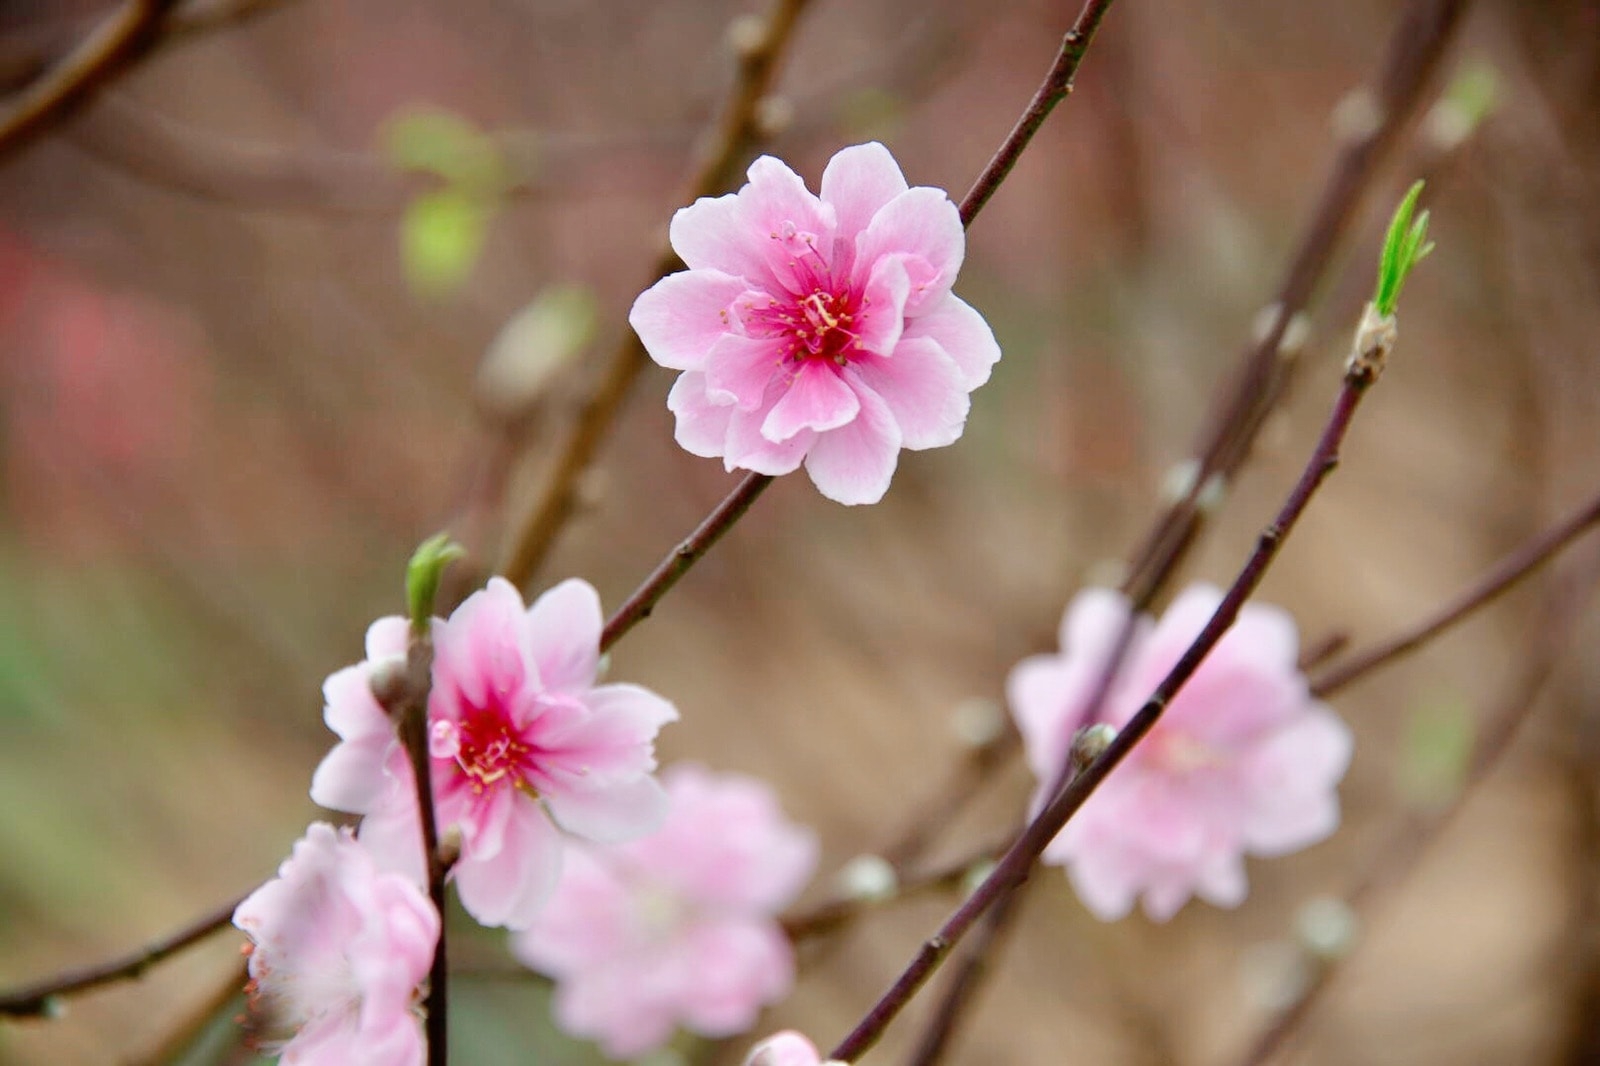 Peach blossoms, flower of vietnamese lunar new year